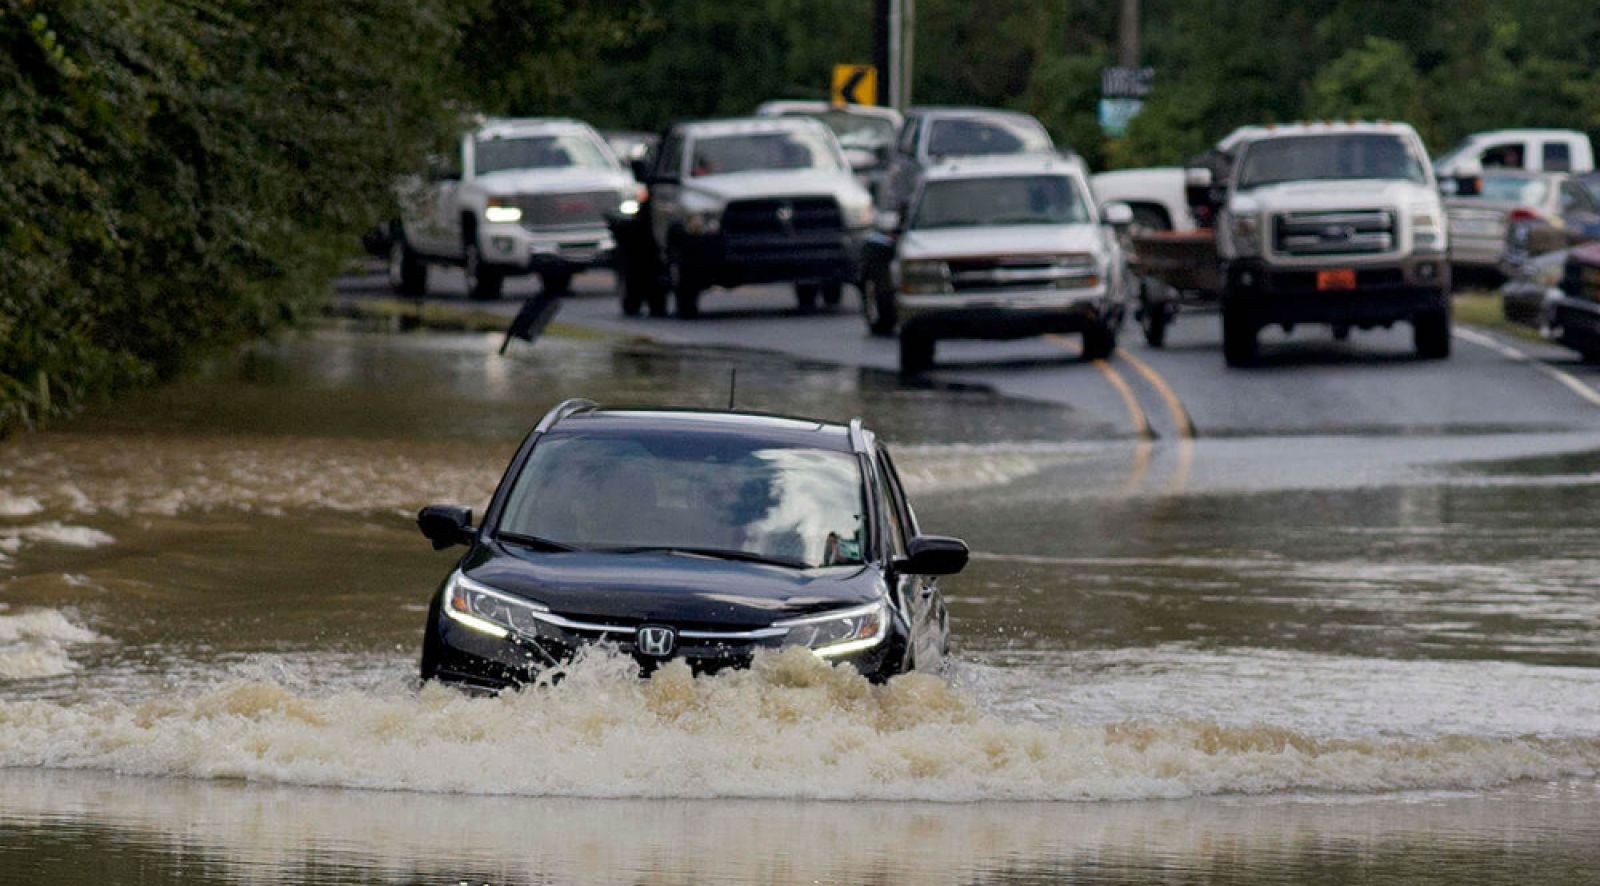 Lái xe mùa mưa bão an toàn với 12 kỹ năng cơ bản